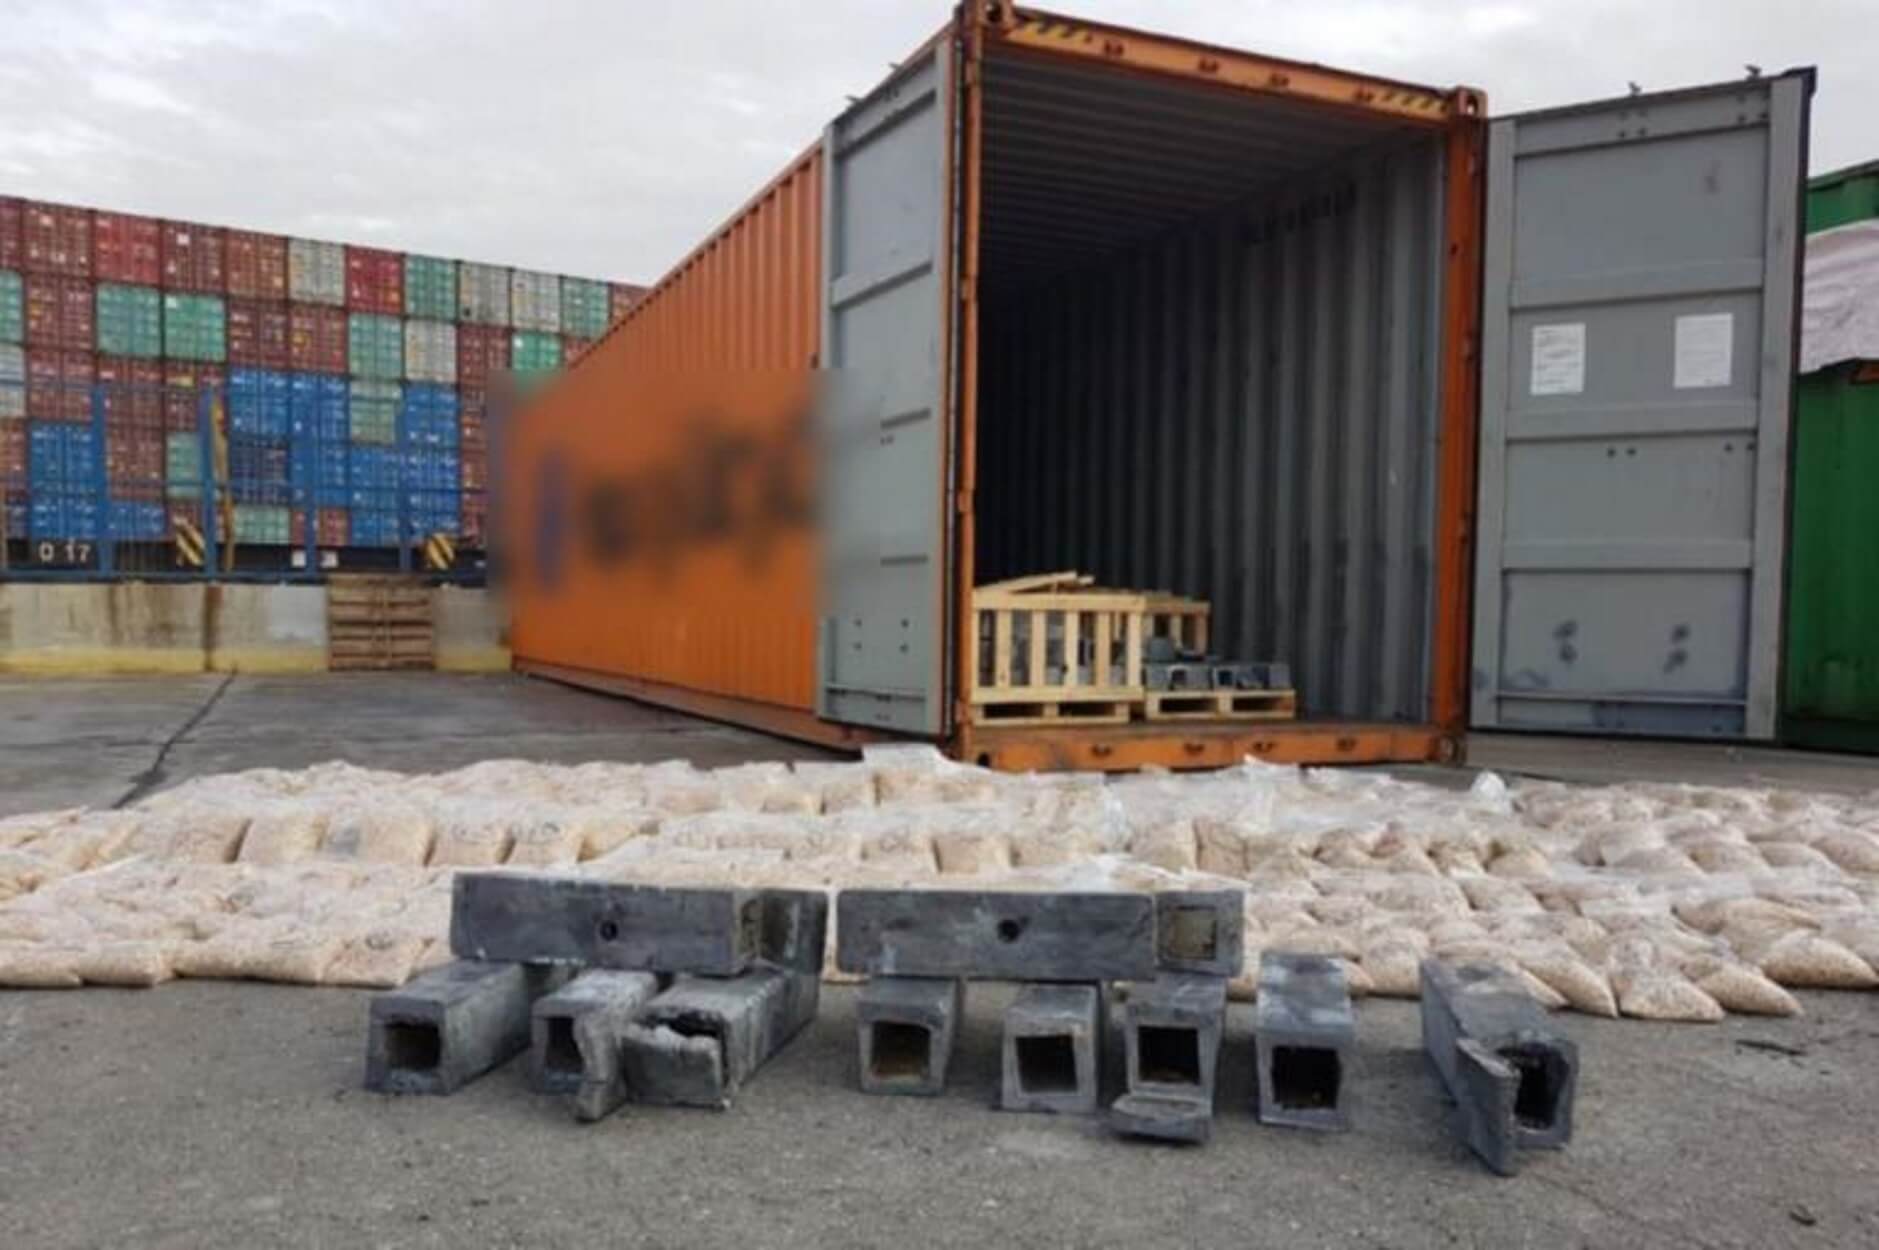 Εκατομμύρια χάπια “captagon” για τζιχαντιστές σε κοντέινερ στο λιμάνι του Πειραιά!